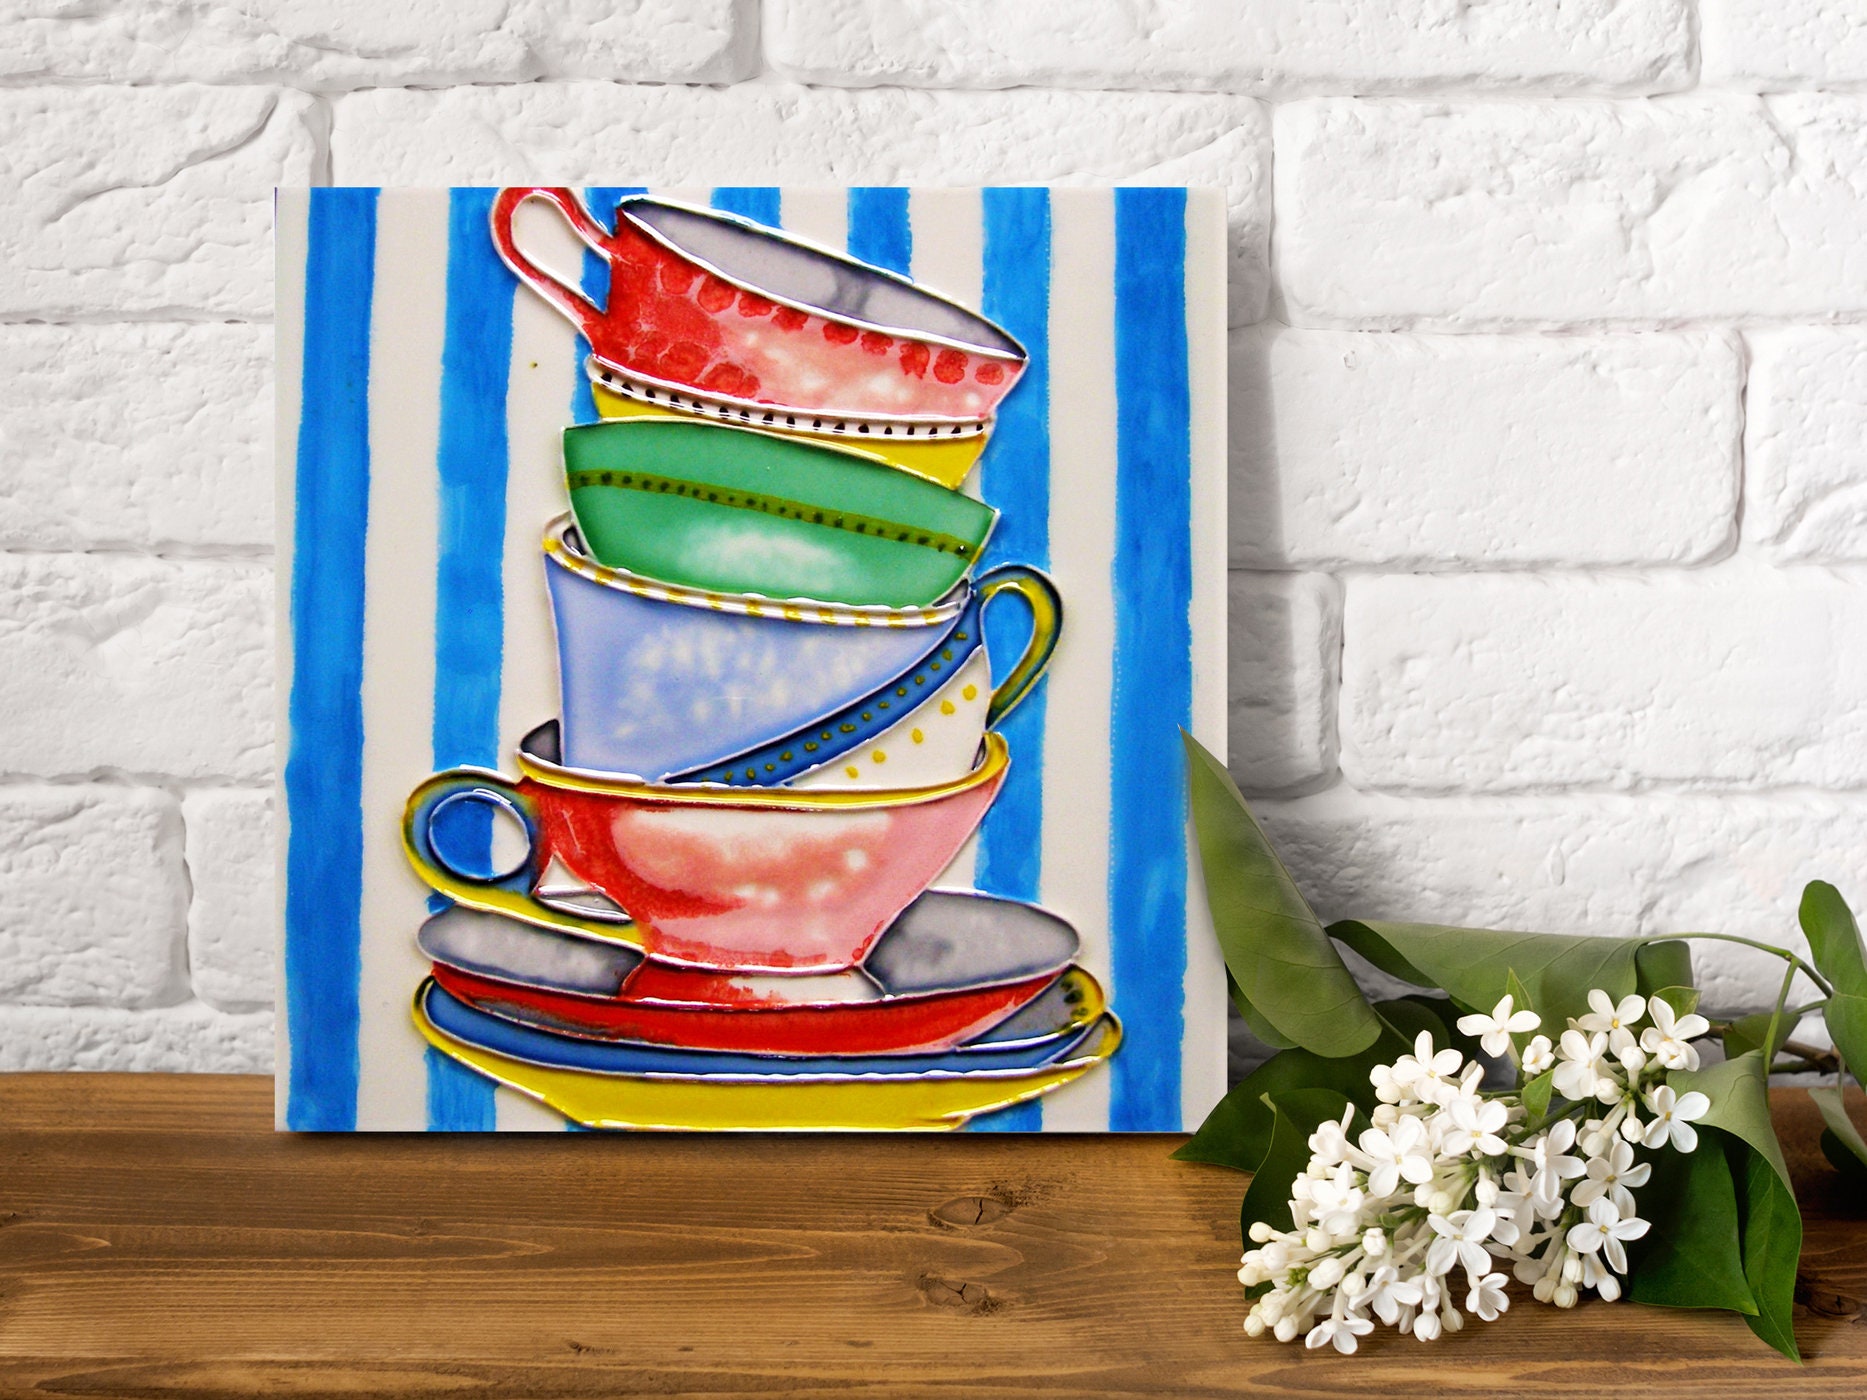 carrelage décoratif en céramique tea party art 20 x cm, plaque chauffante, dessous de plat, oeuvre d'art mural